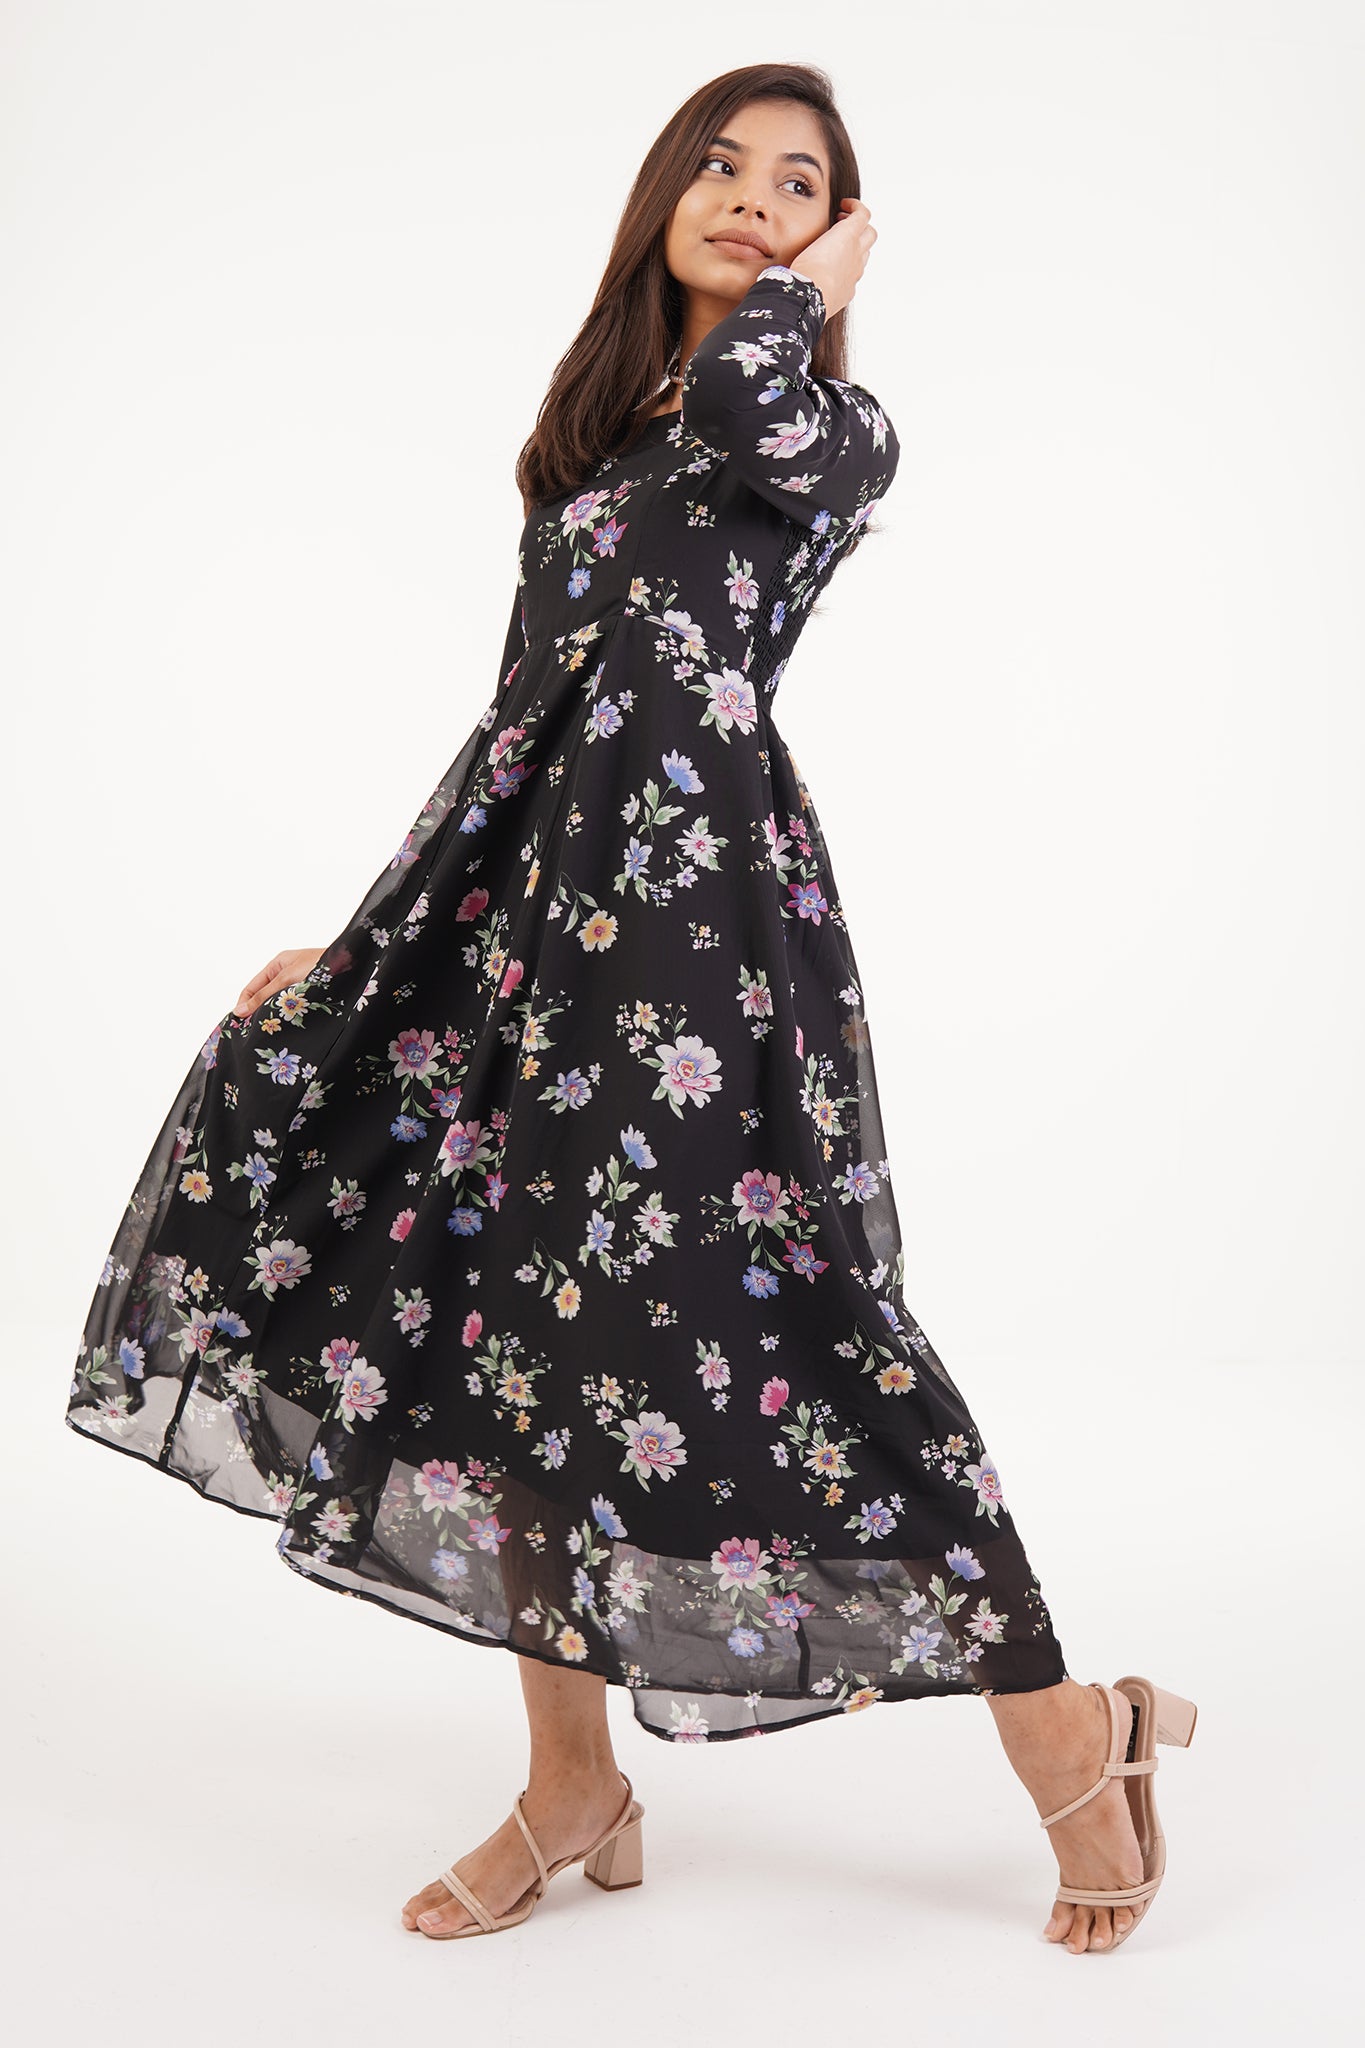 Rachel - Black Floral Dress